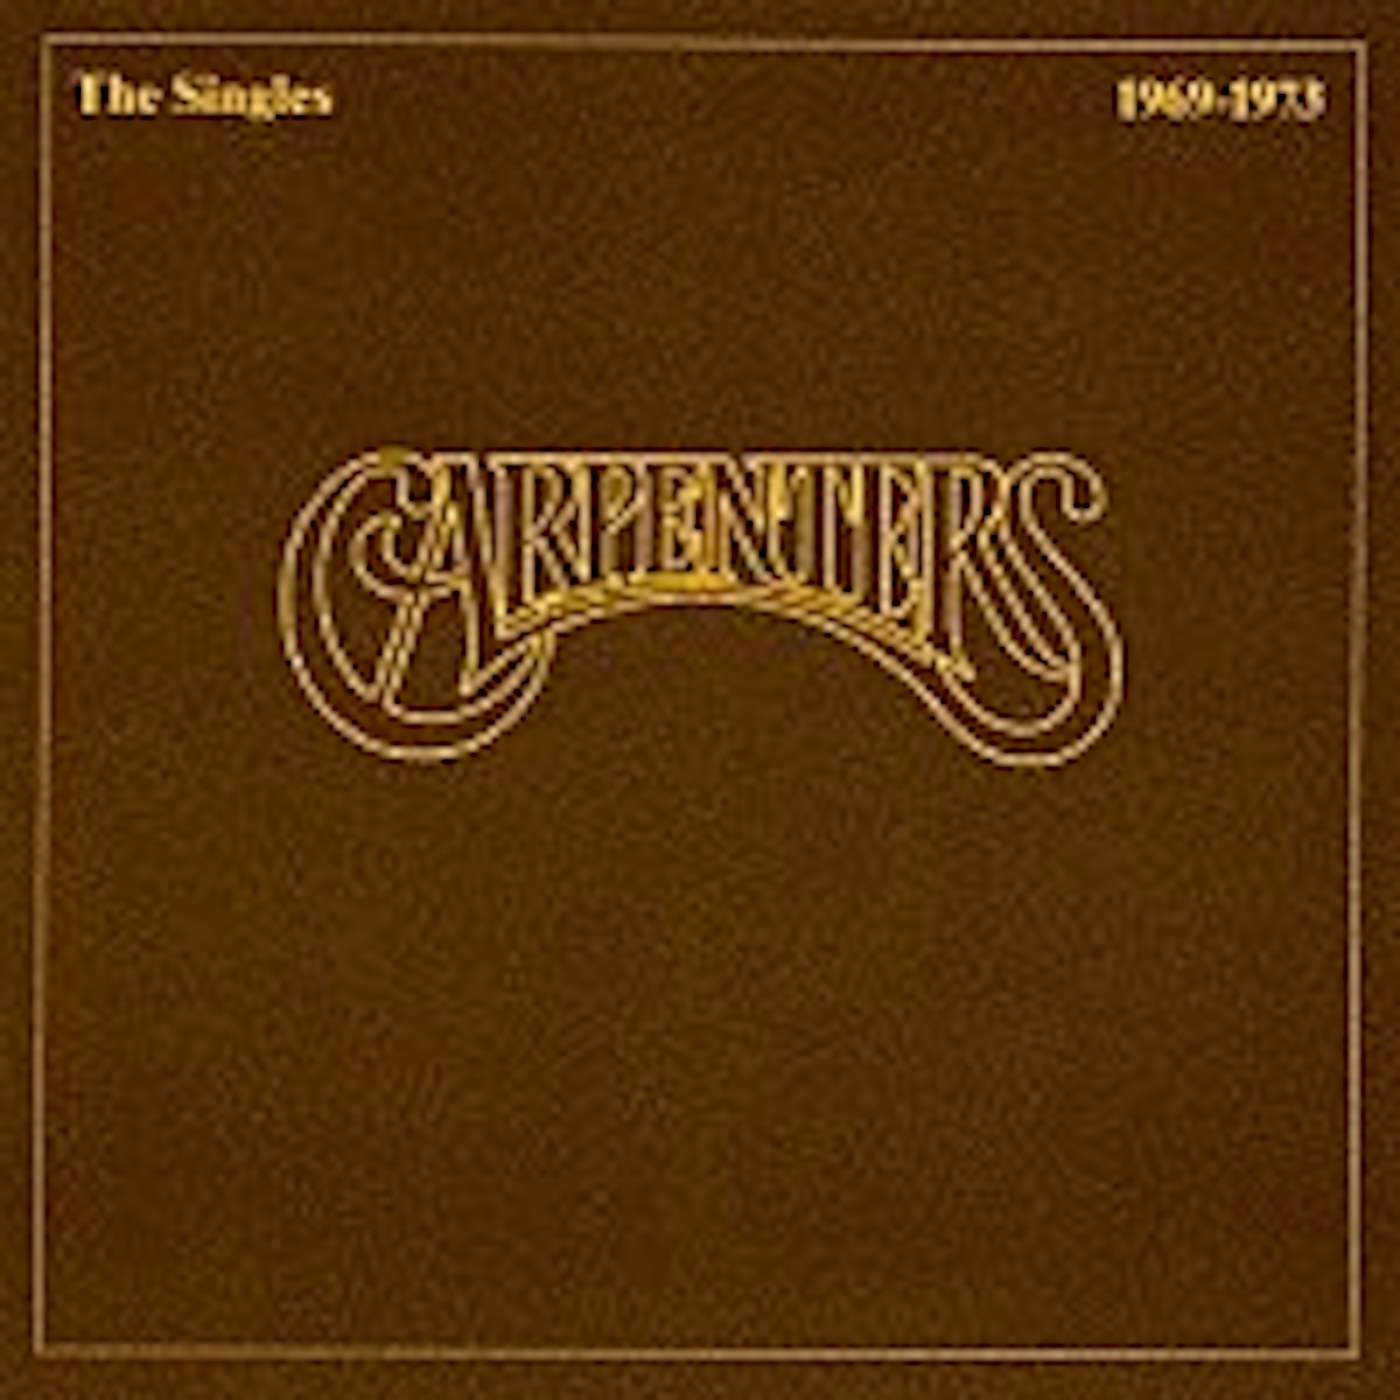 Carpenters SINGLES 1969 - 1973 CD